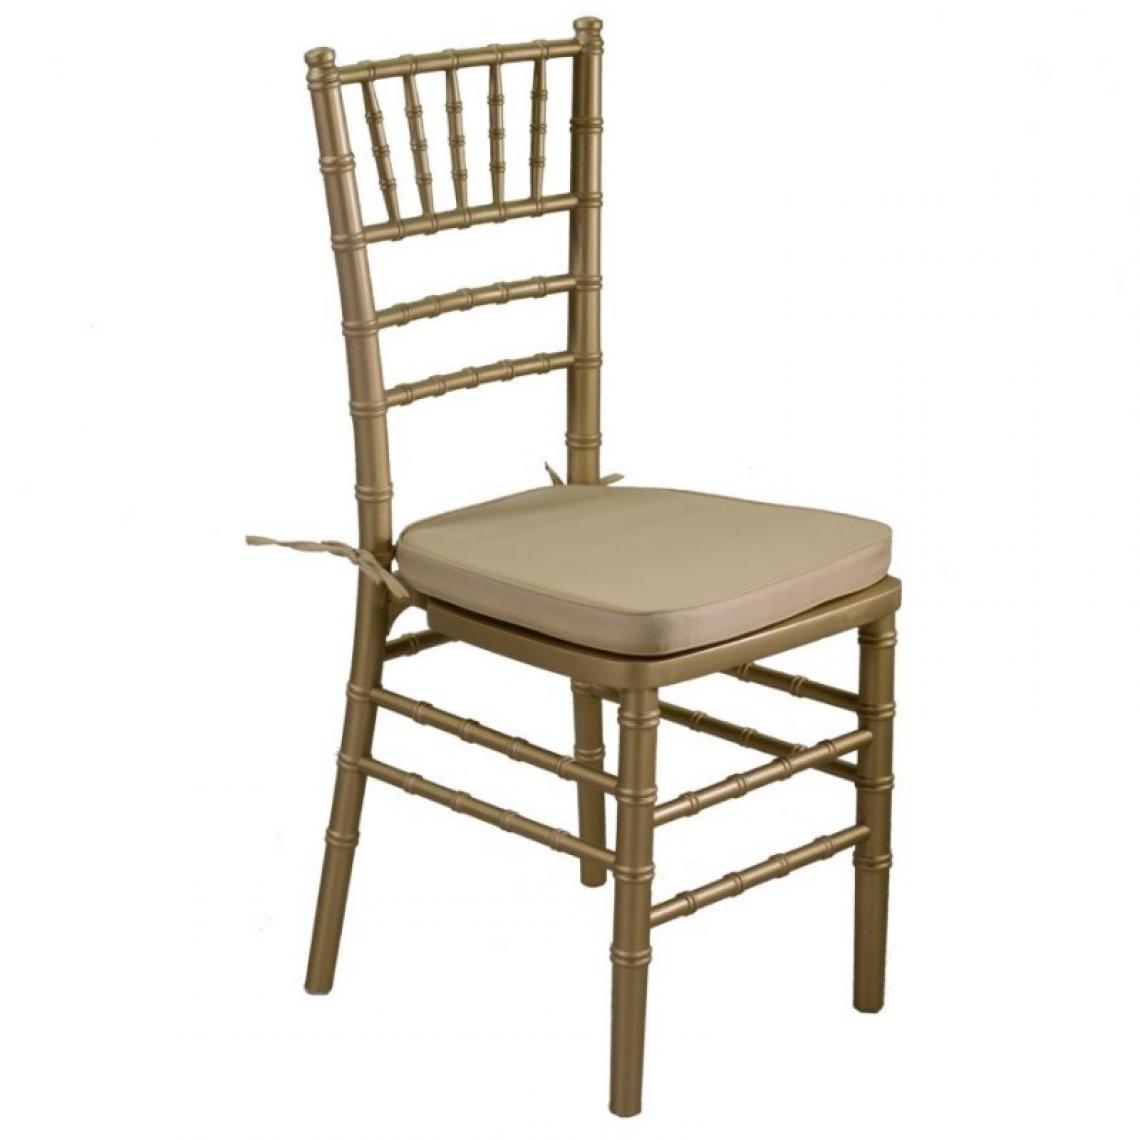 Webmarketpoint - Chaise en bois chiavari doré avec coussin doré 40x40h43 / 92 cm - Chaises